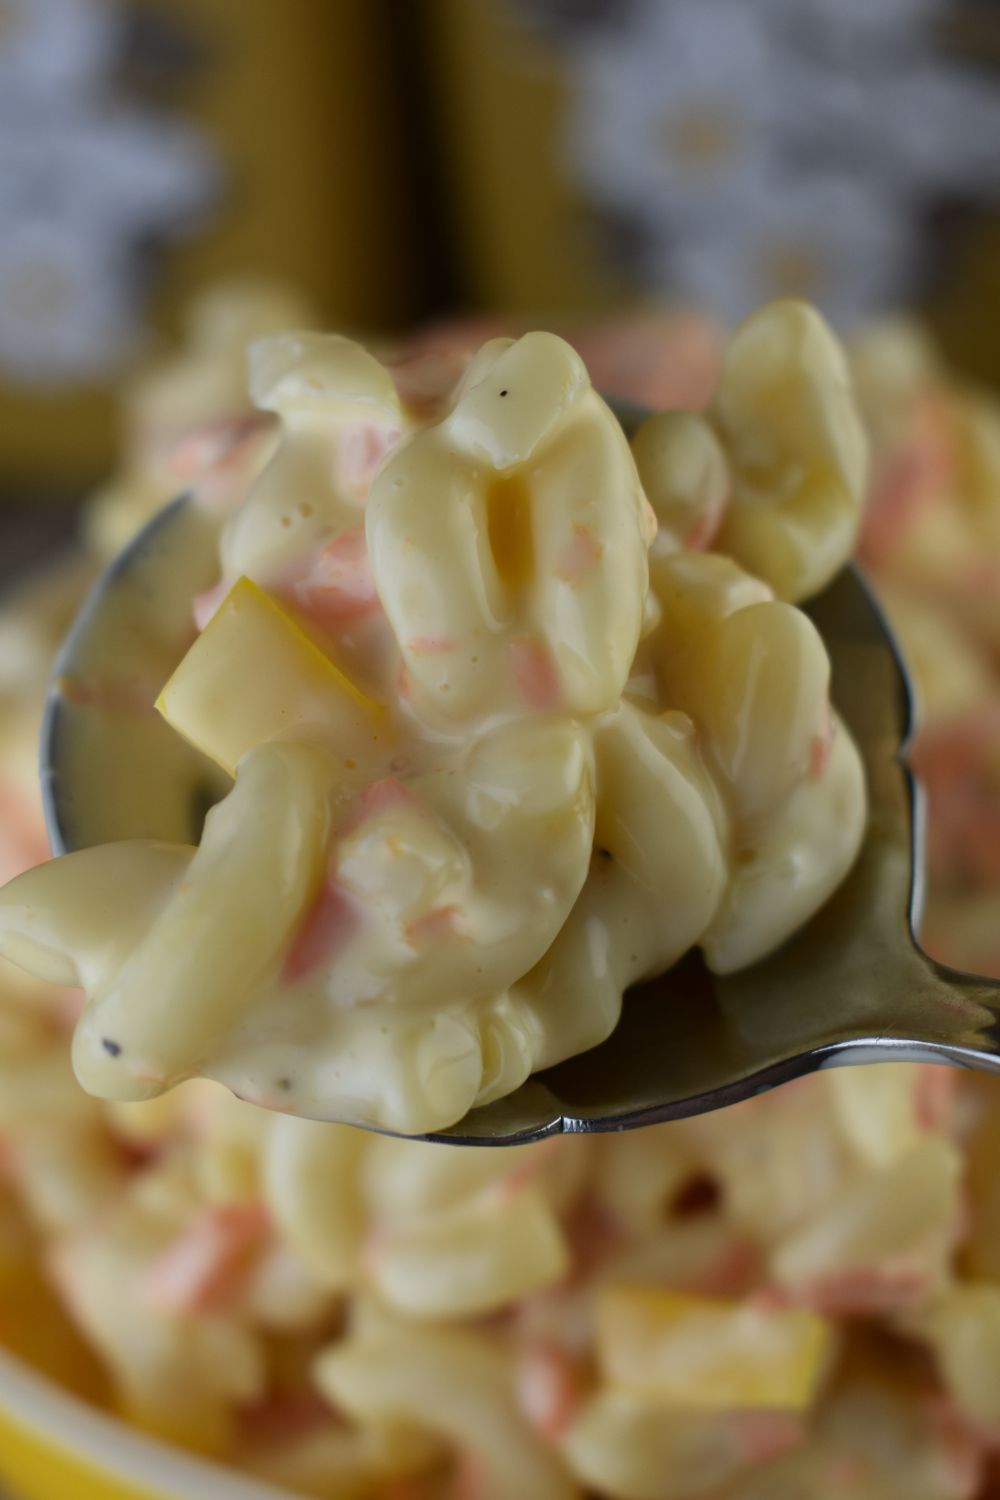 Classic Macaroni Salad – An Old Fashioned Macaroni Salad Recipe